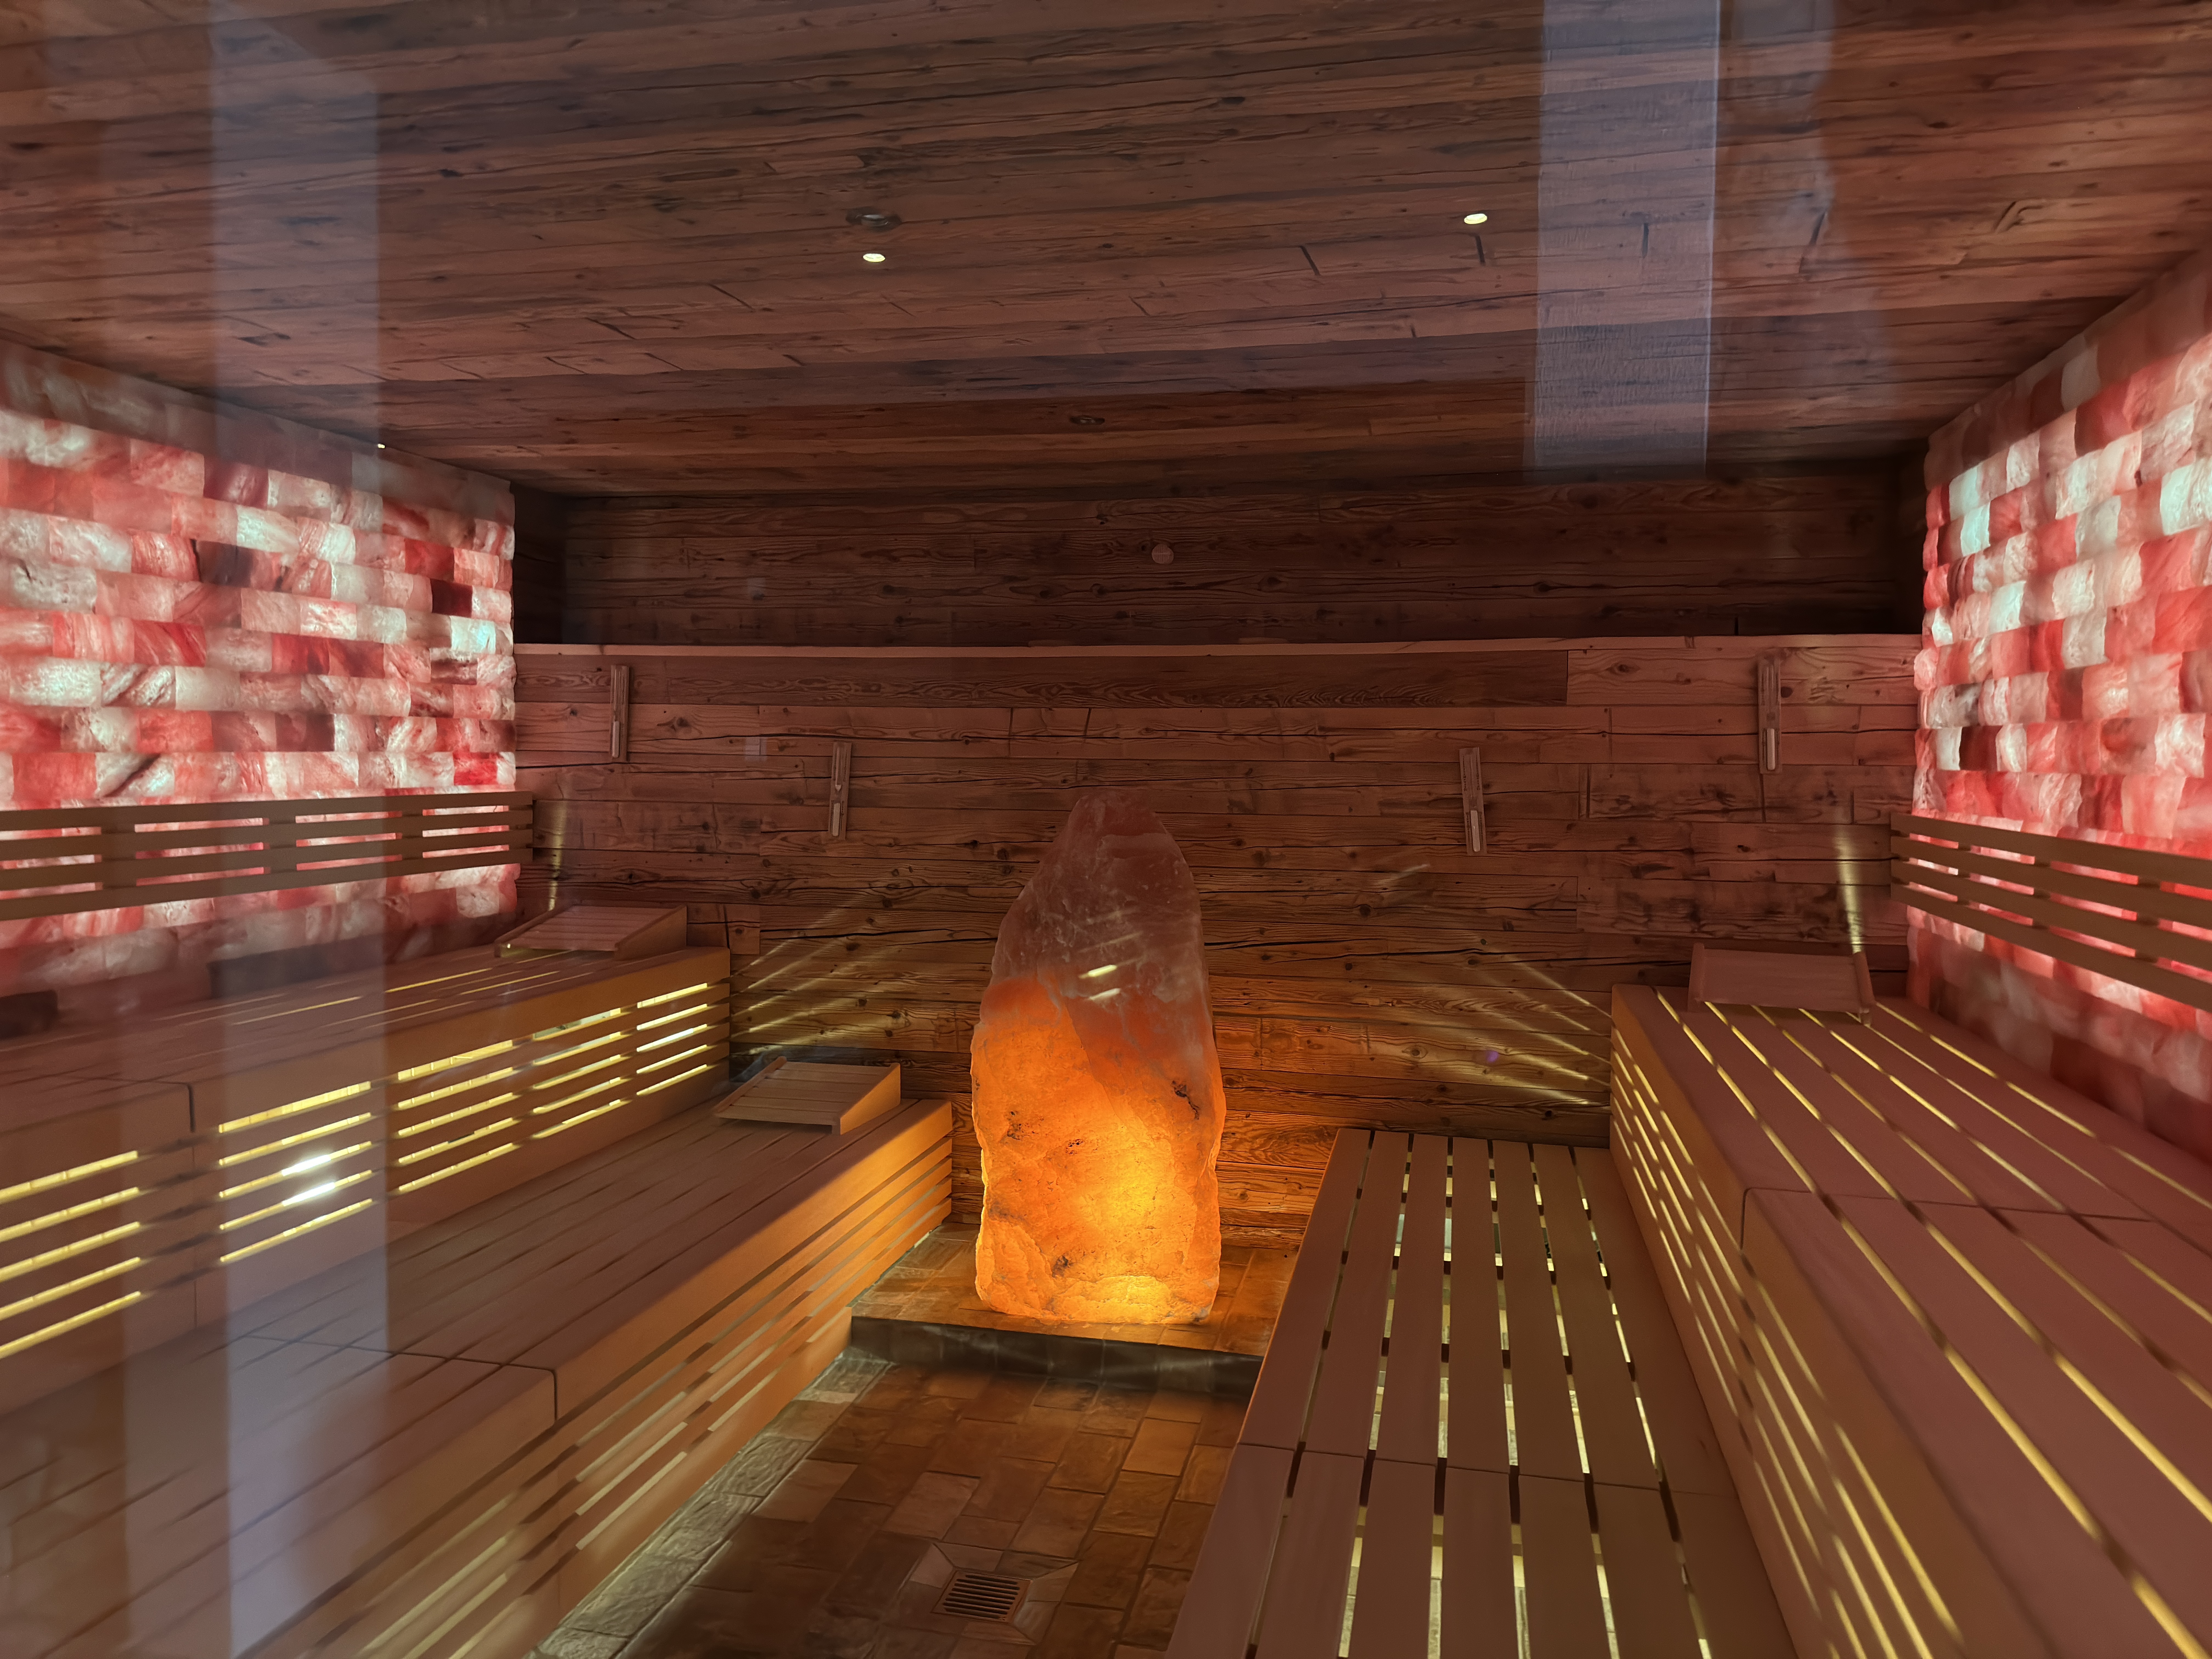 Zu den vorhandenen Einrichtungen gehört auch eine großzügige Sauna